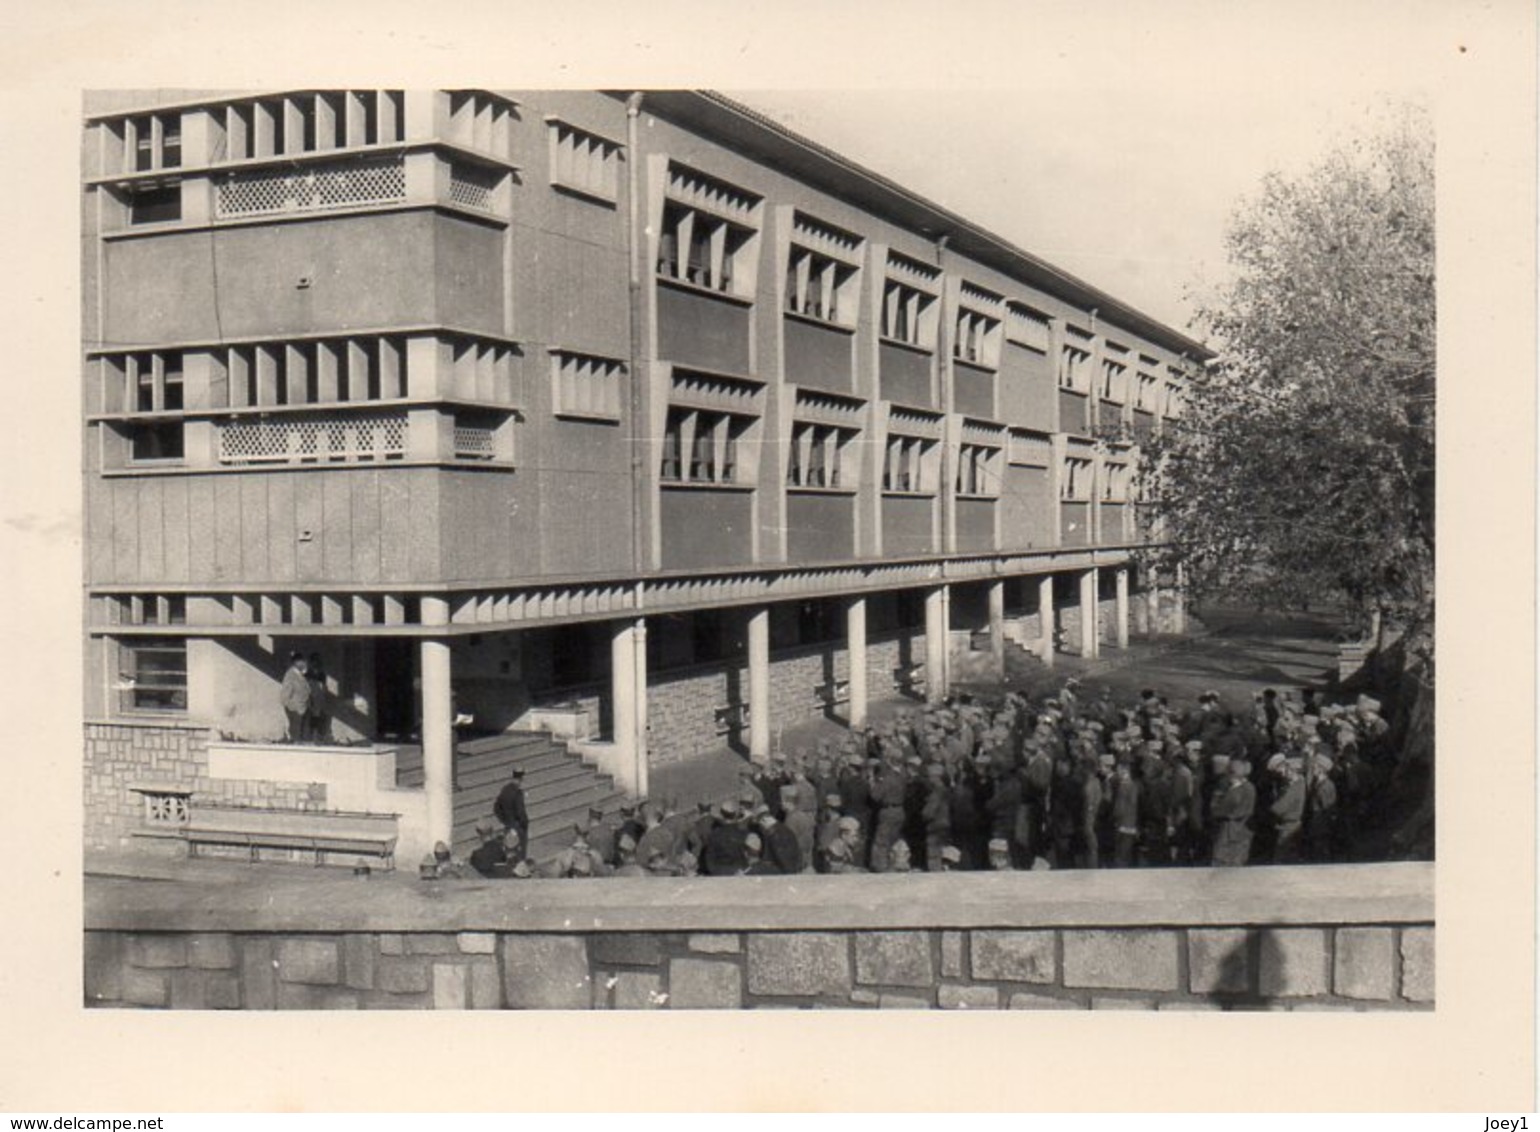 Photo Guerre D Algérie 1962 ,école Militaire Césarée,Cherchell - Krieg, Militär